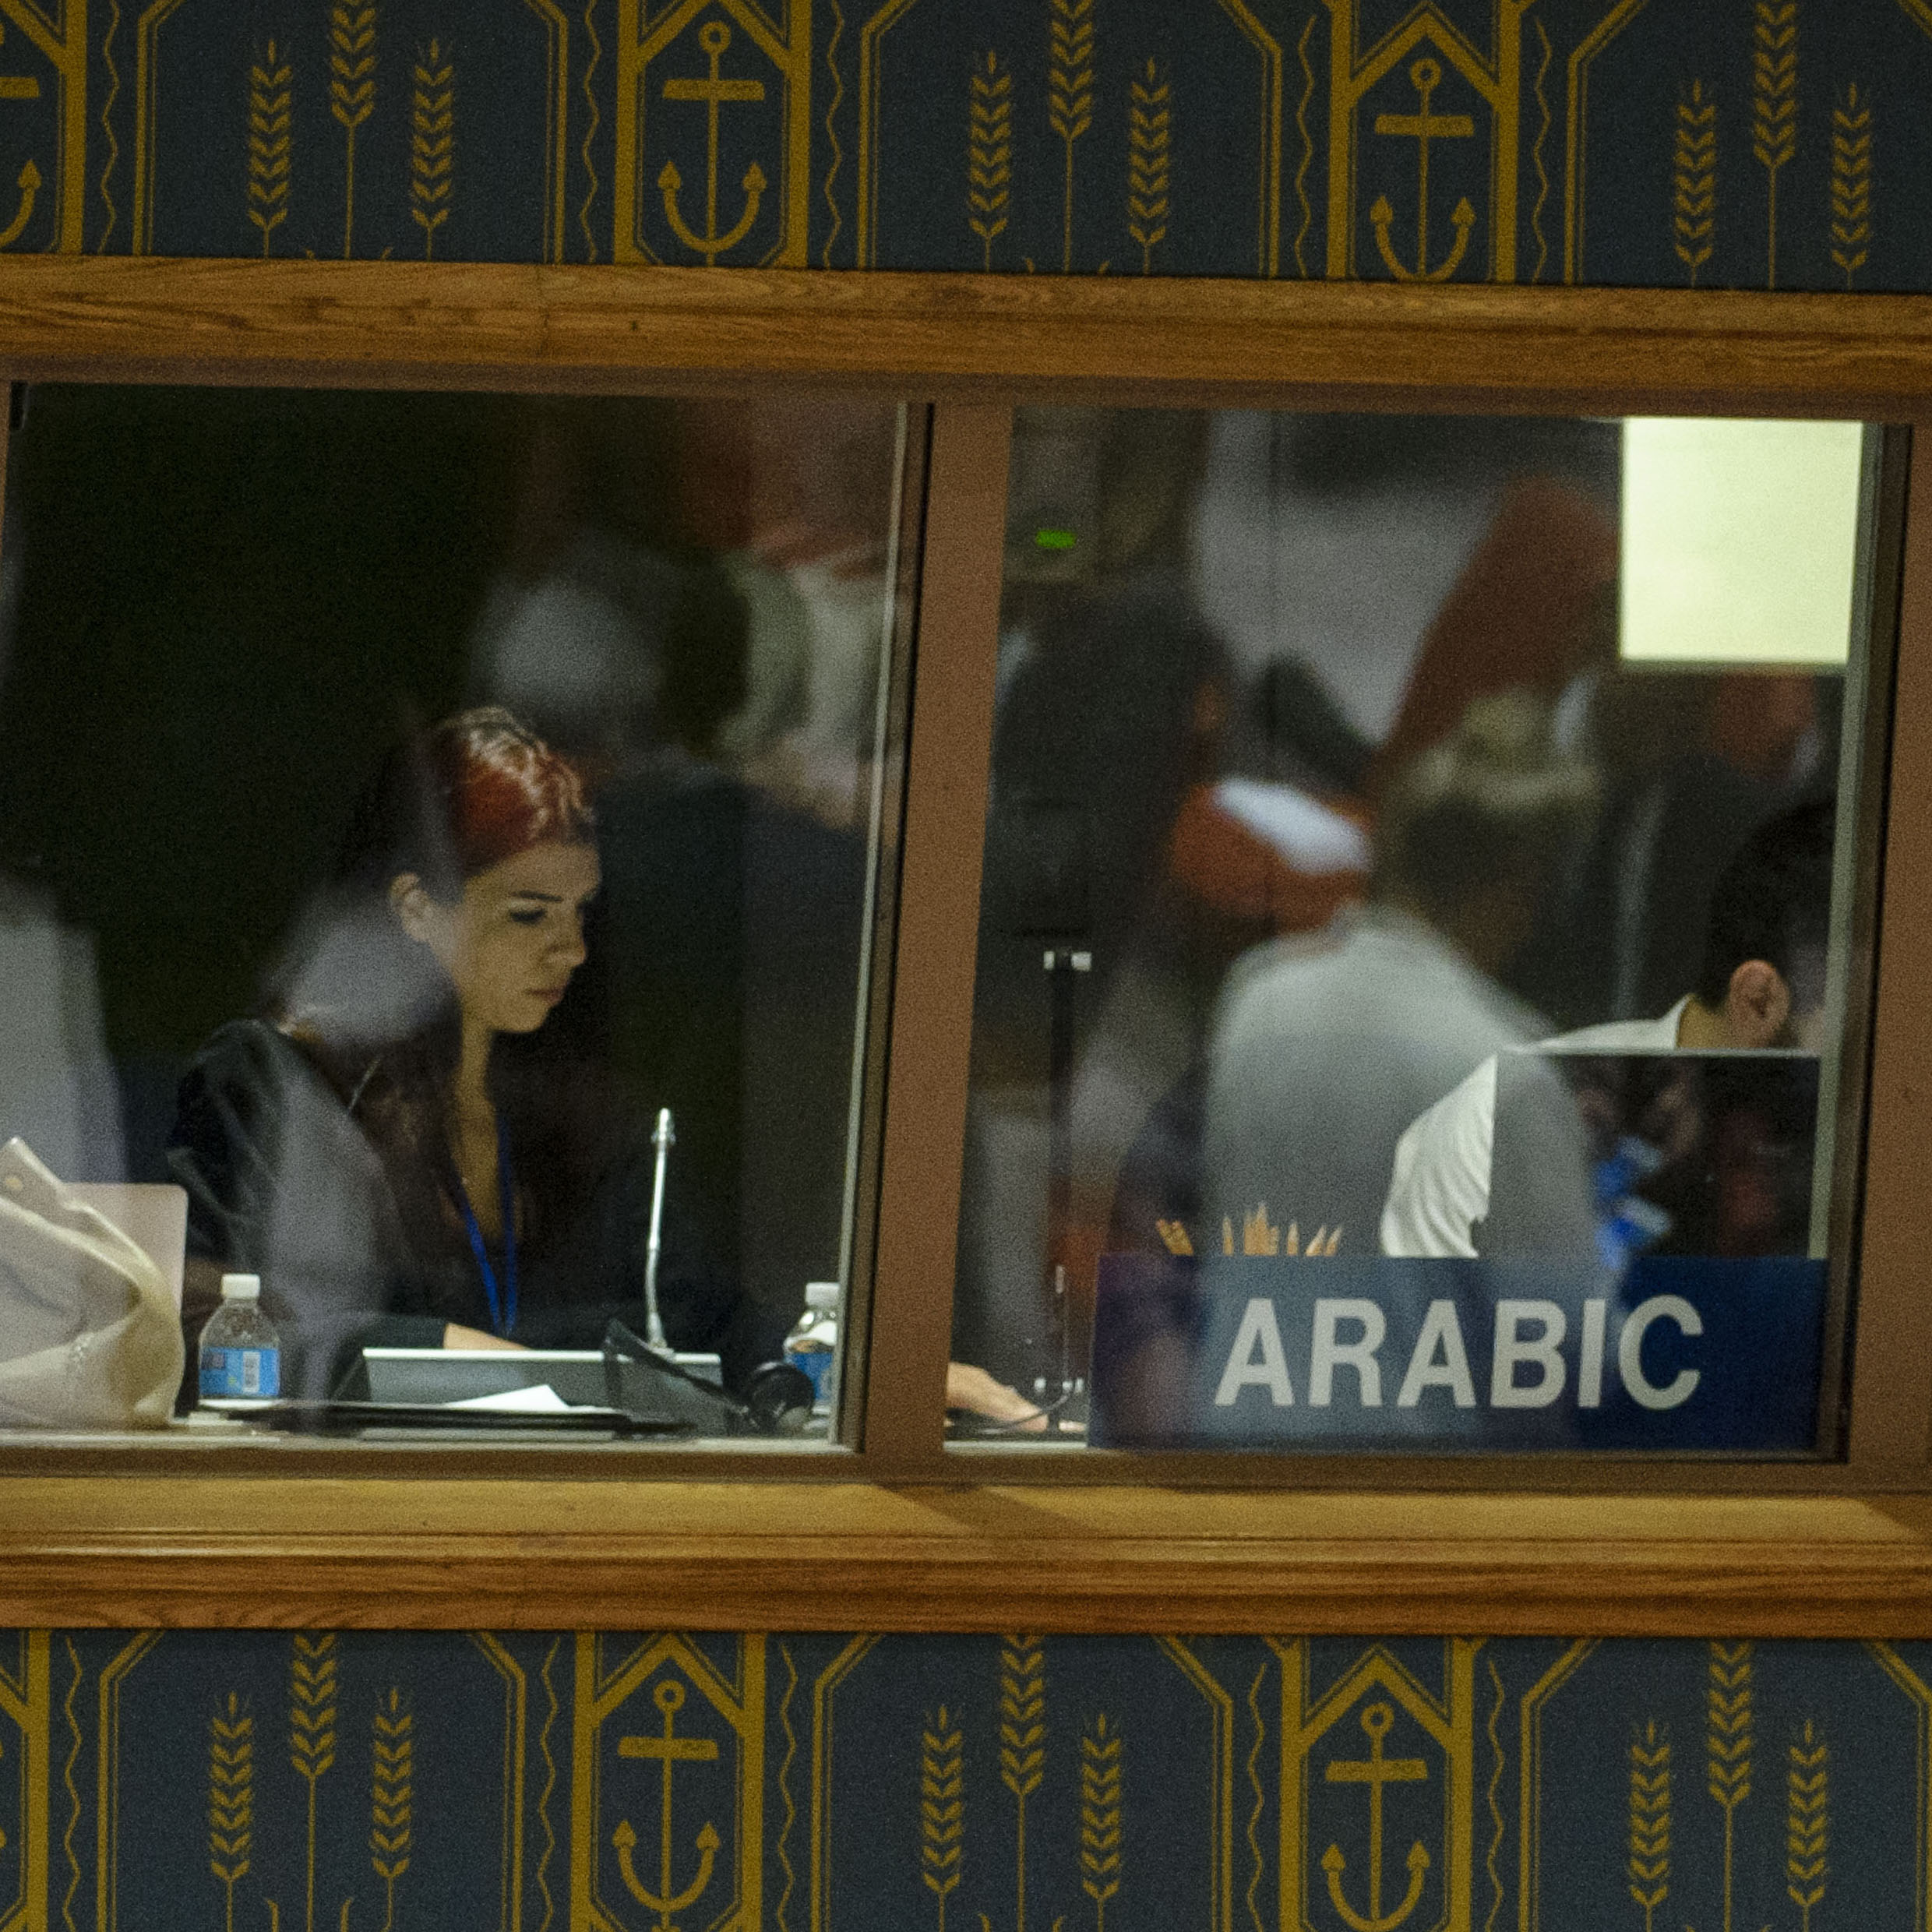 联合国阿拉伯语口译员在进行翻译。